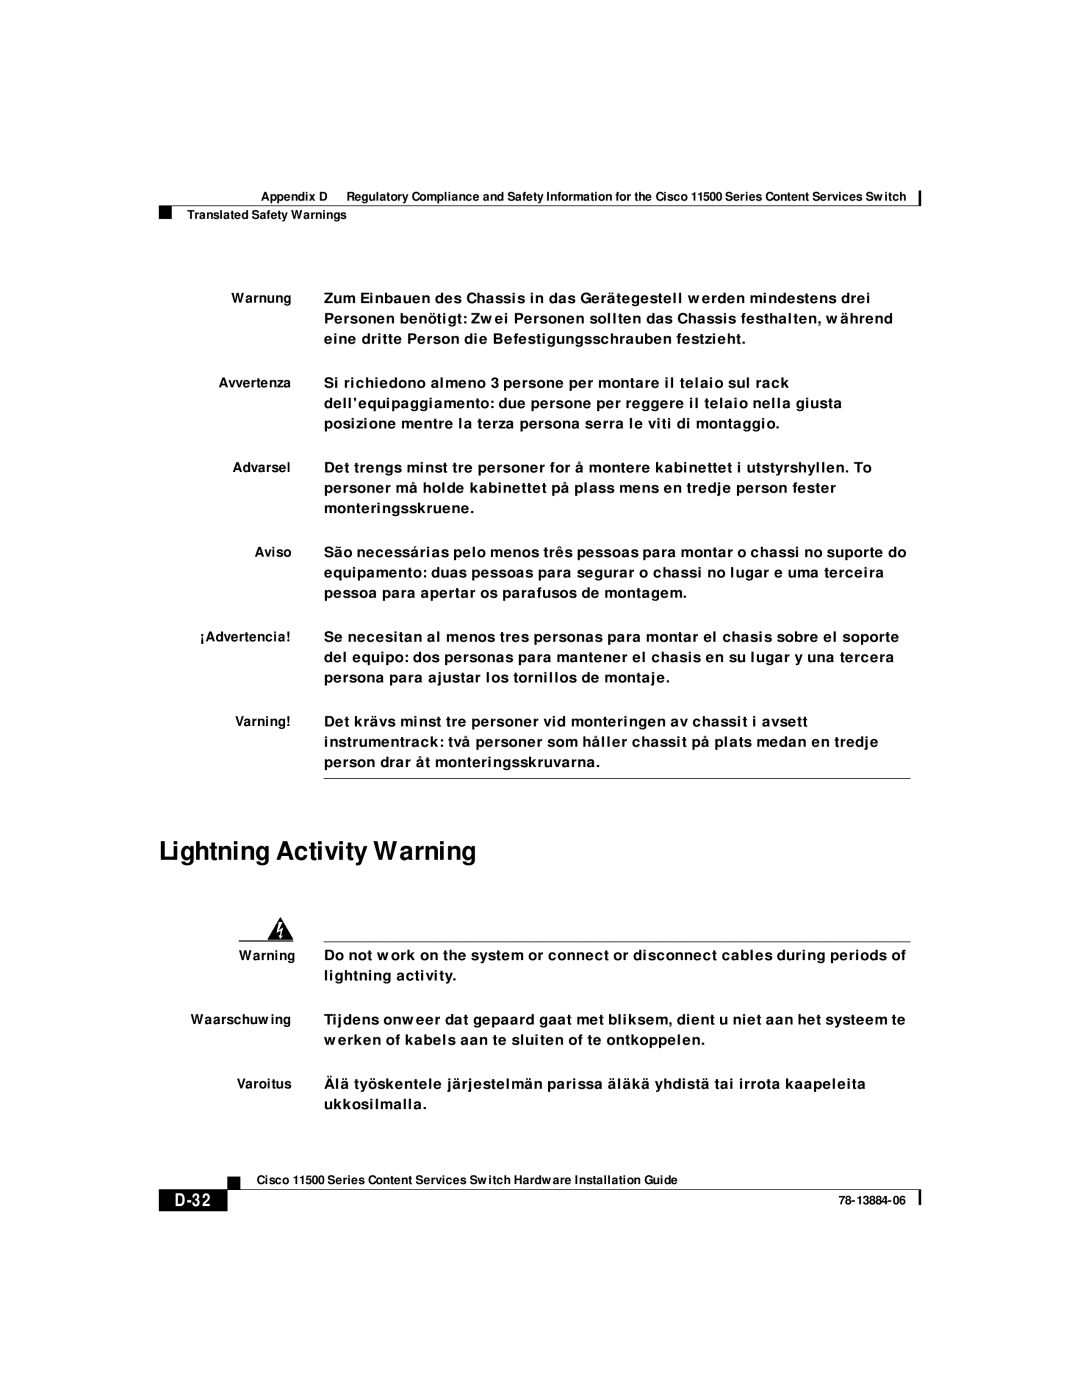 Cisco Systems 11506, 11503, 11501, 11500 appendix Lightning Activity Warning, D-32 